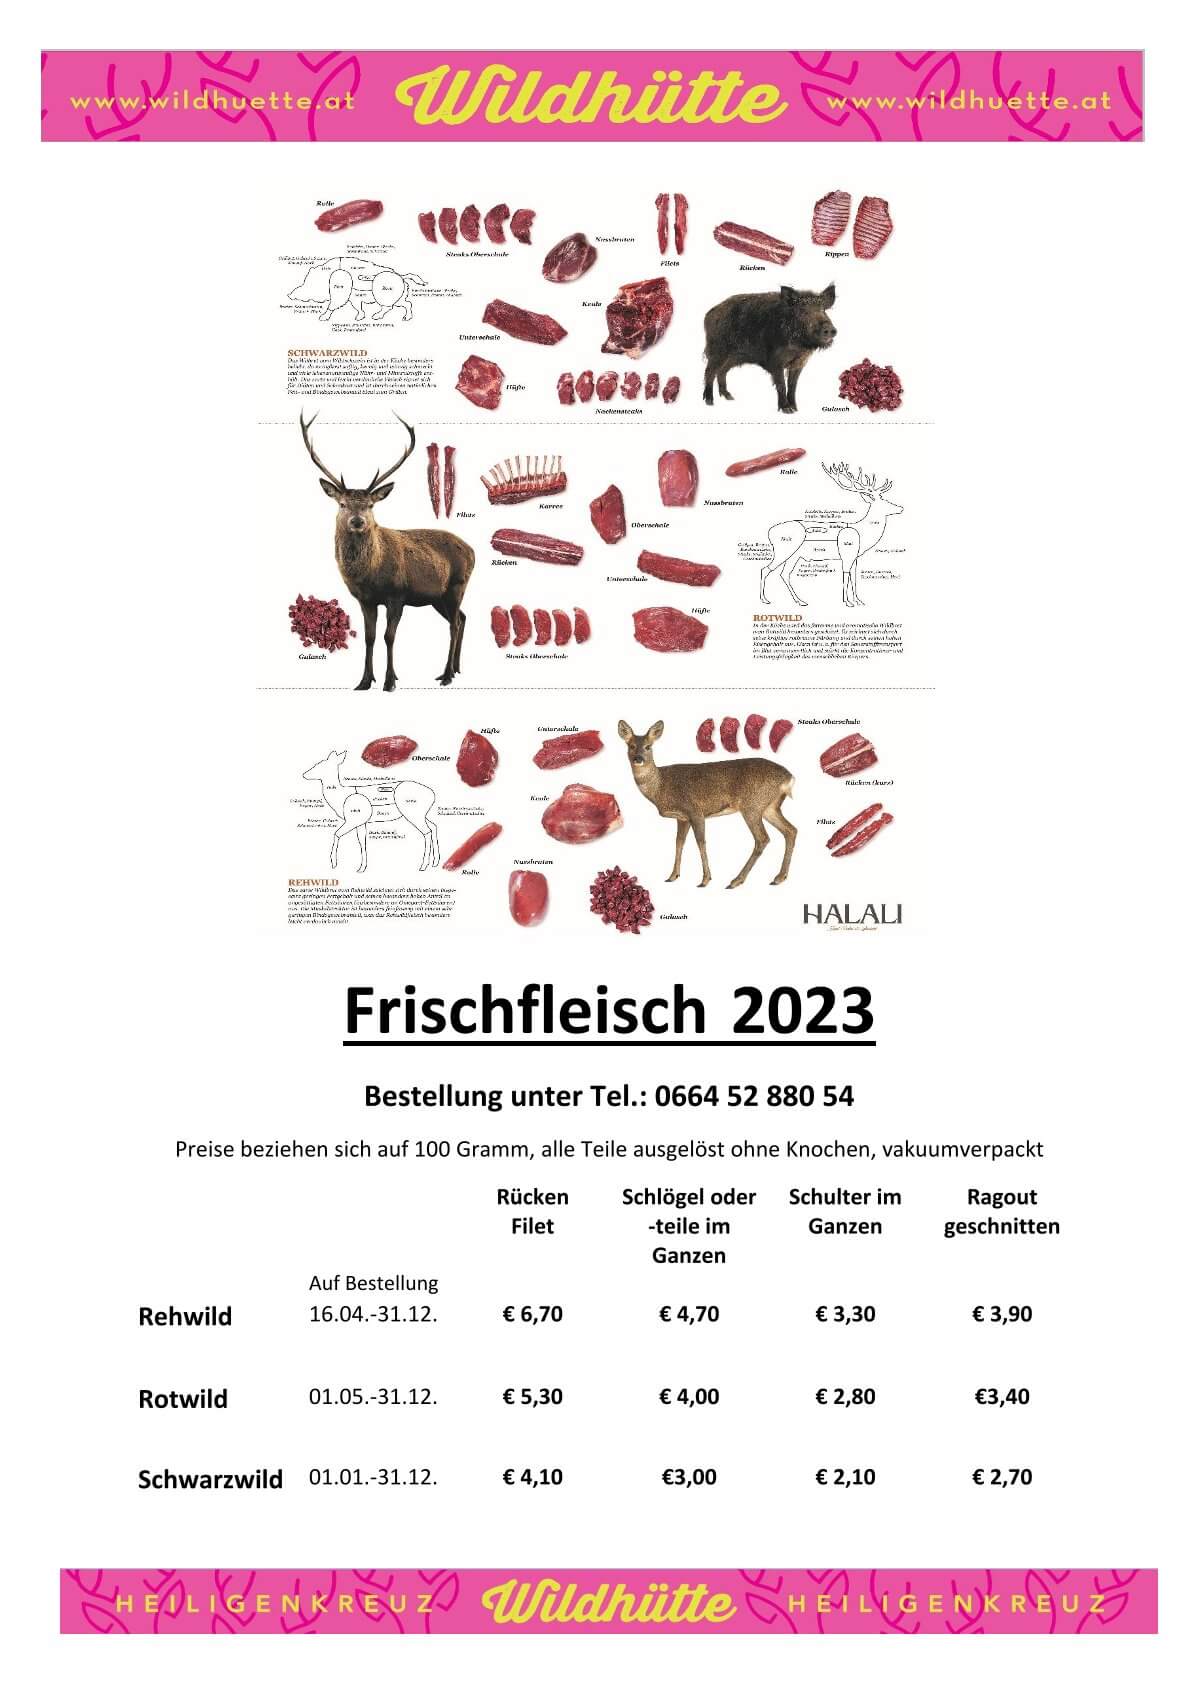 Frsichfleich 2023